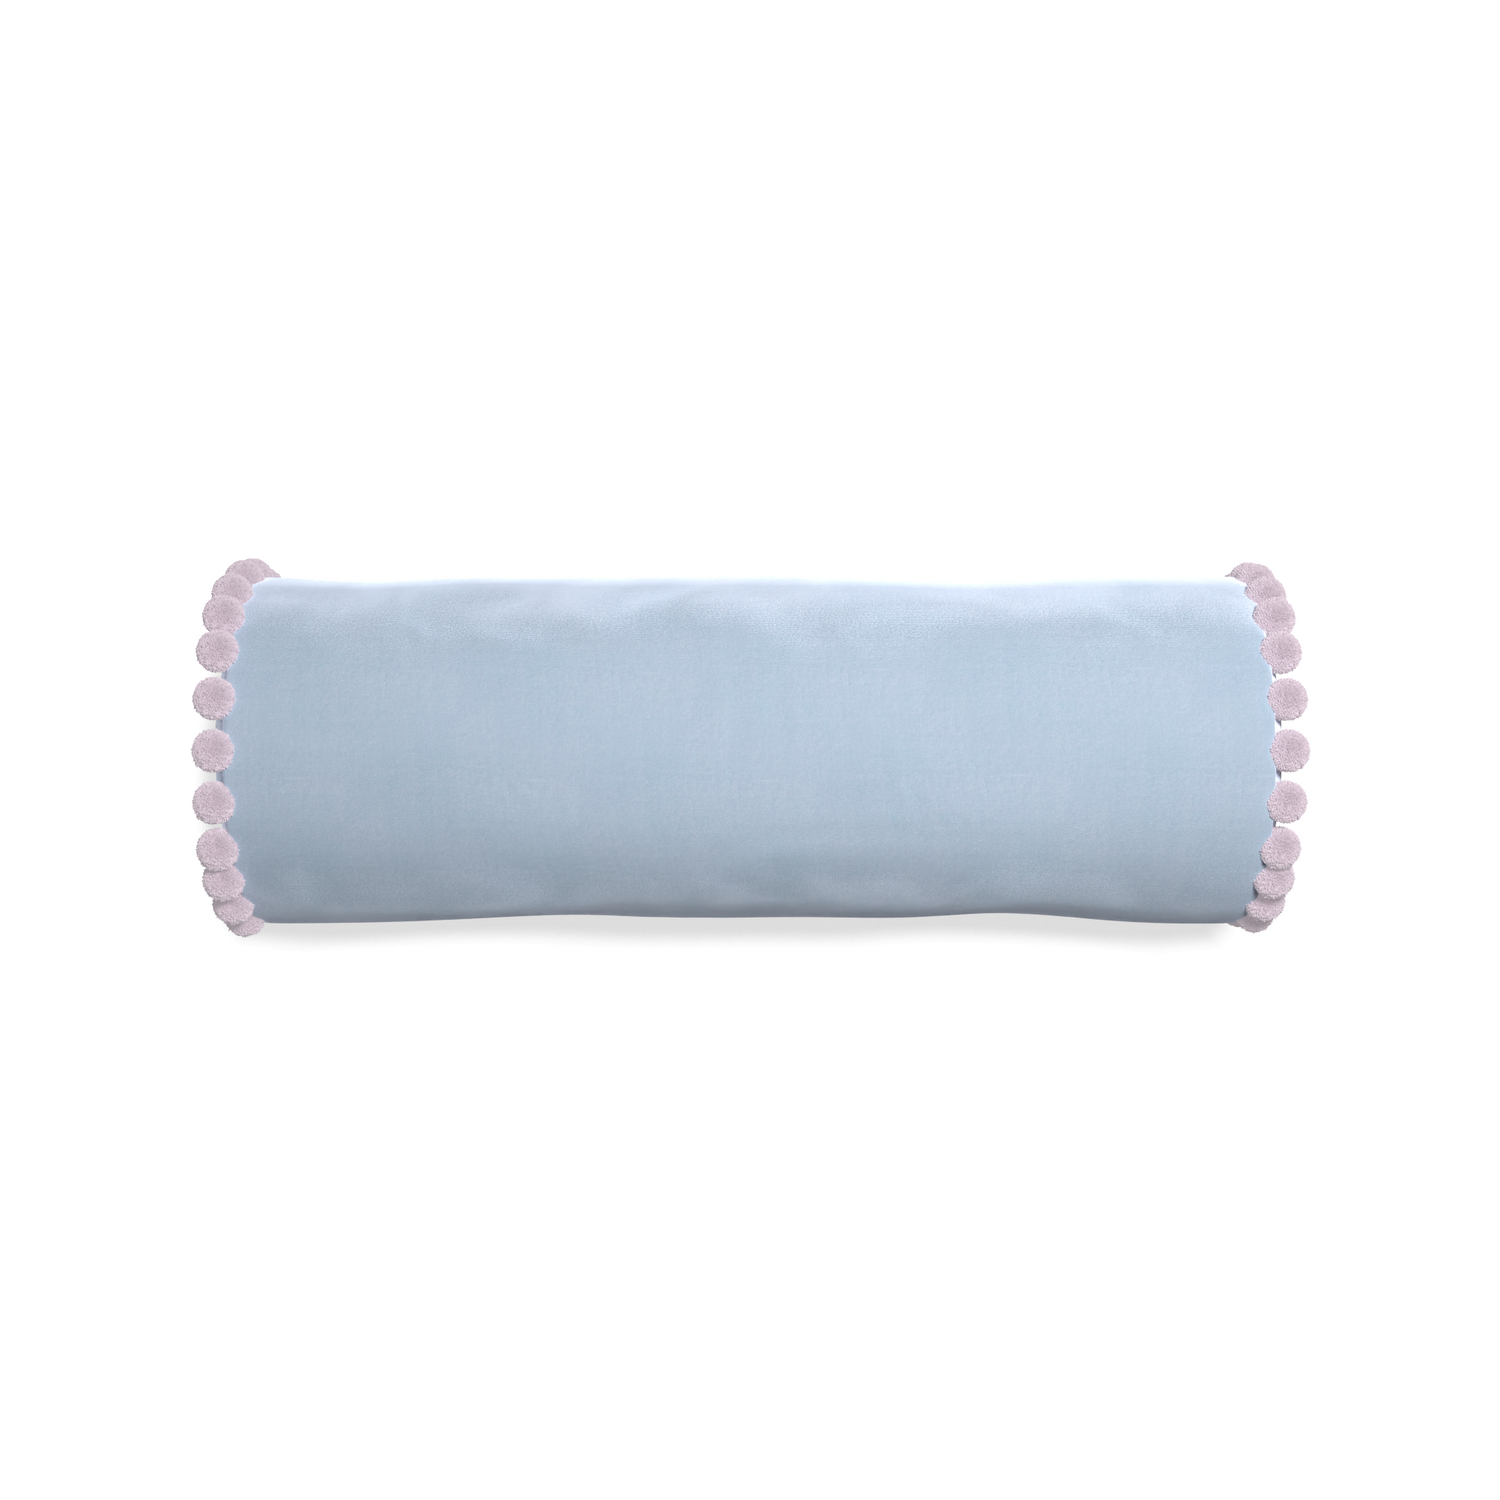 bolster light blue velvet pillow with lilac pom pom